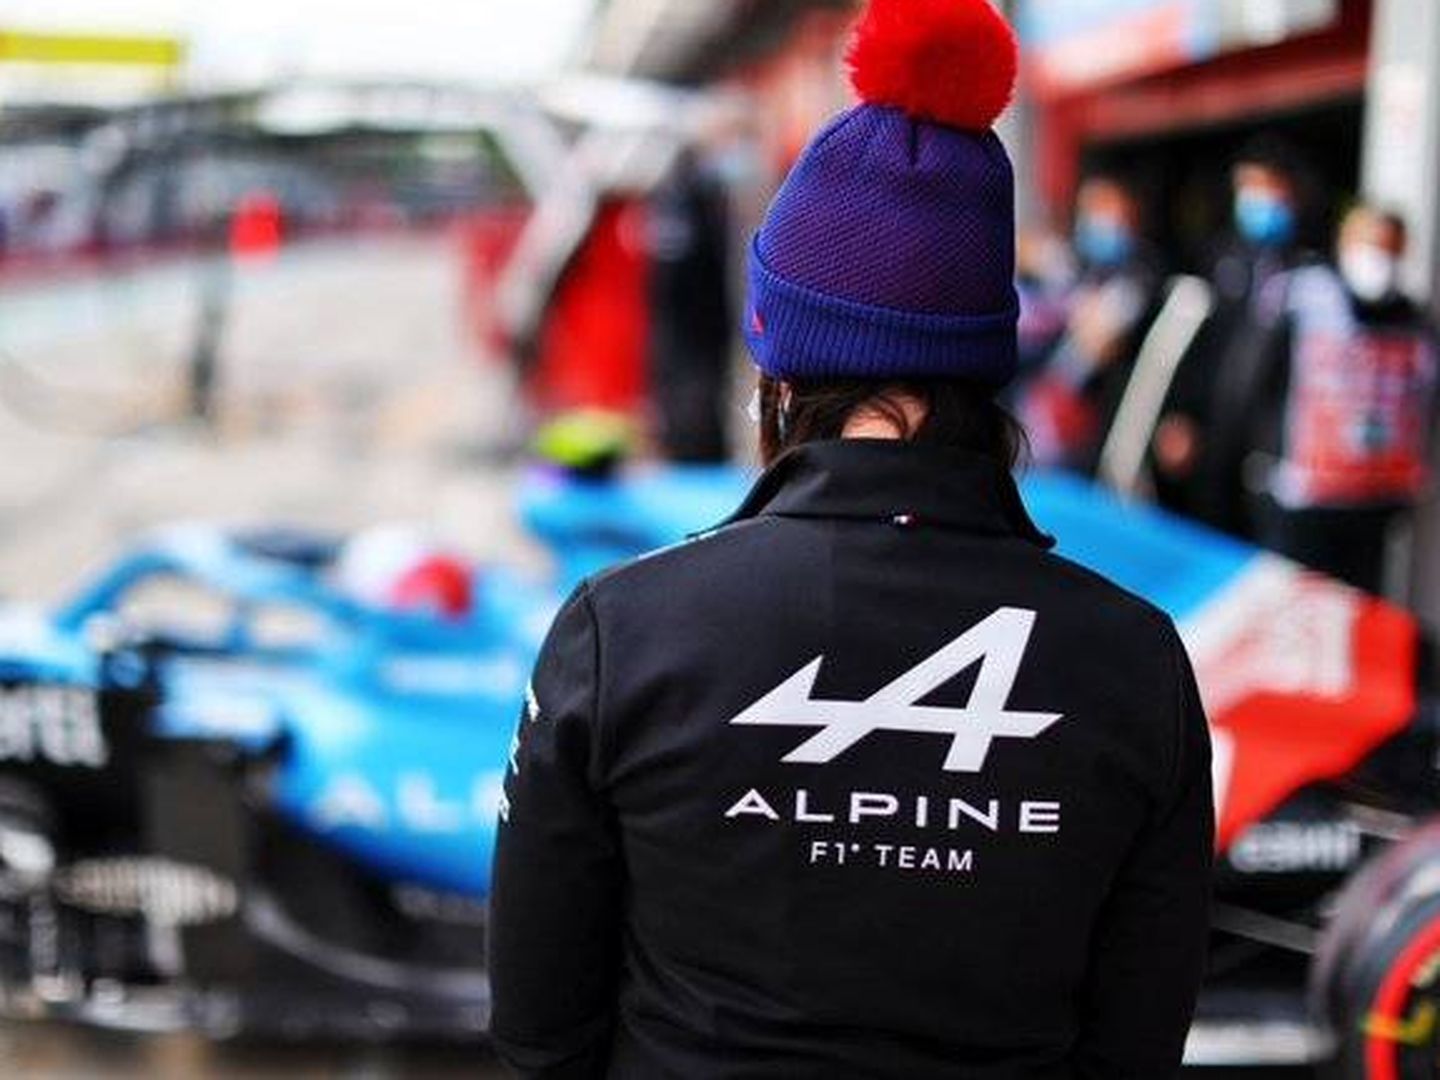 Si el A521 mantiene el actual nivel durante el resto de la temporada, será un año duro para Alonso.